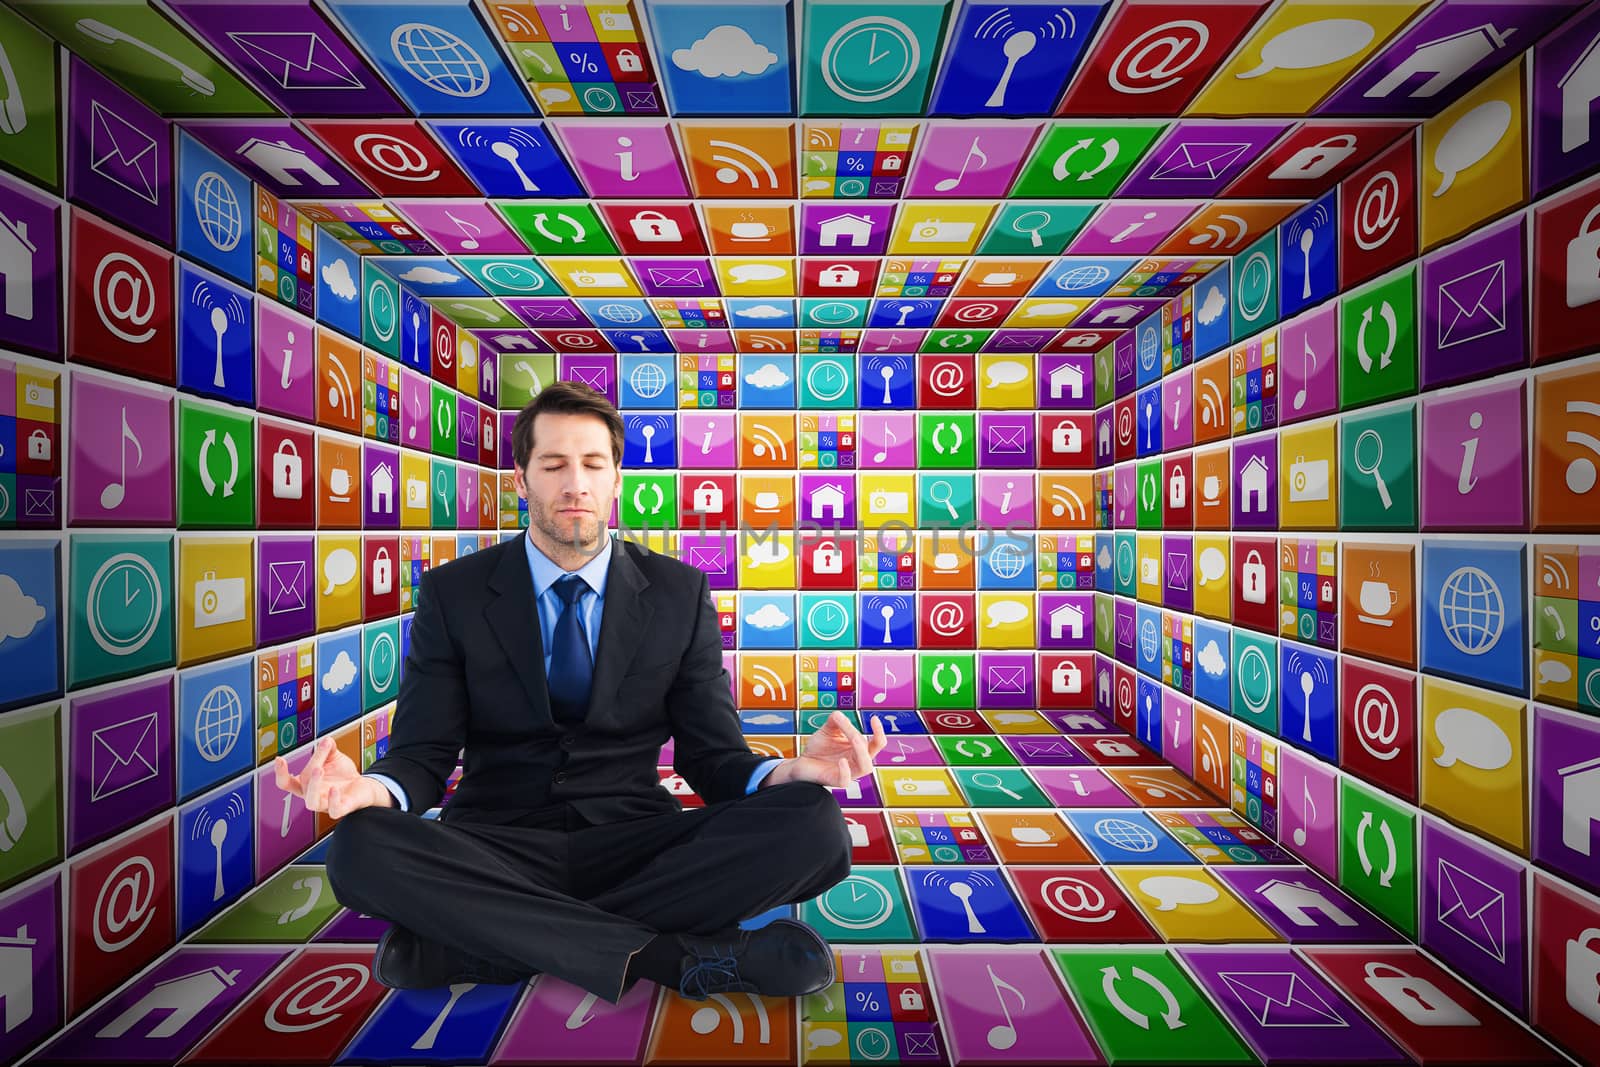 Calm businessman sitting in lotus pose against app room